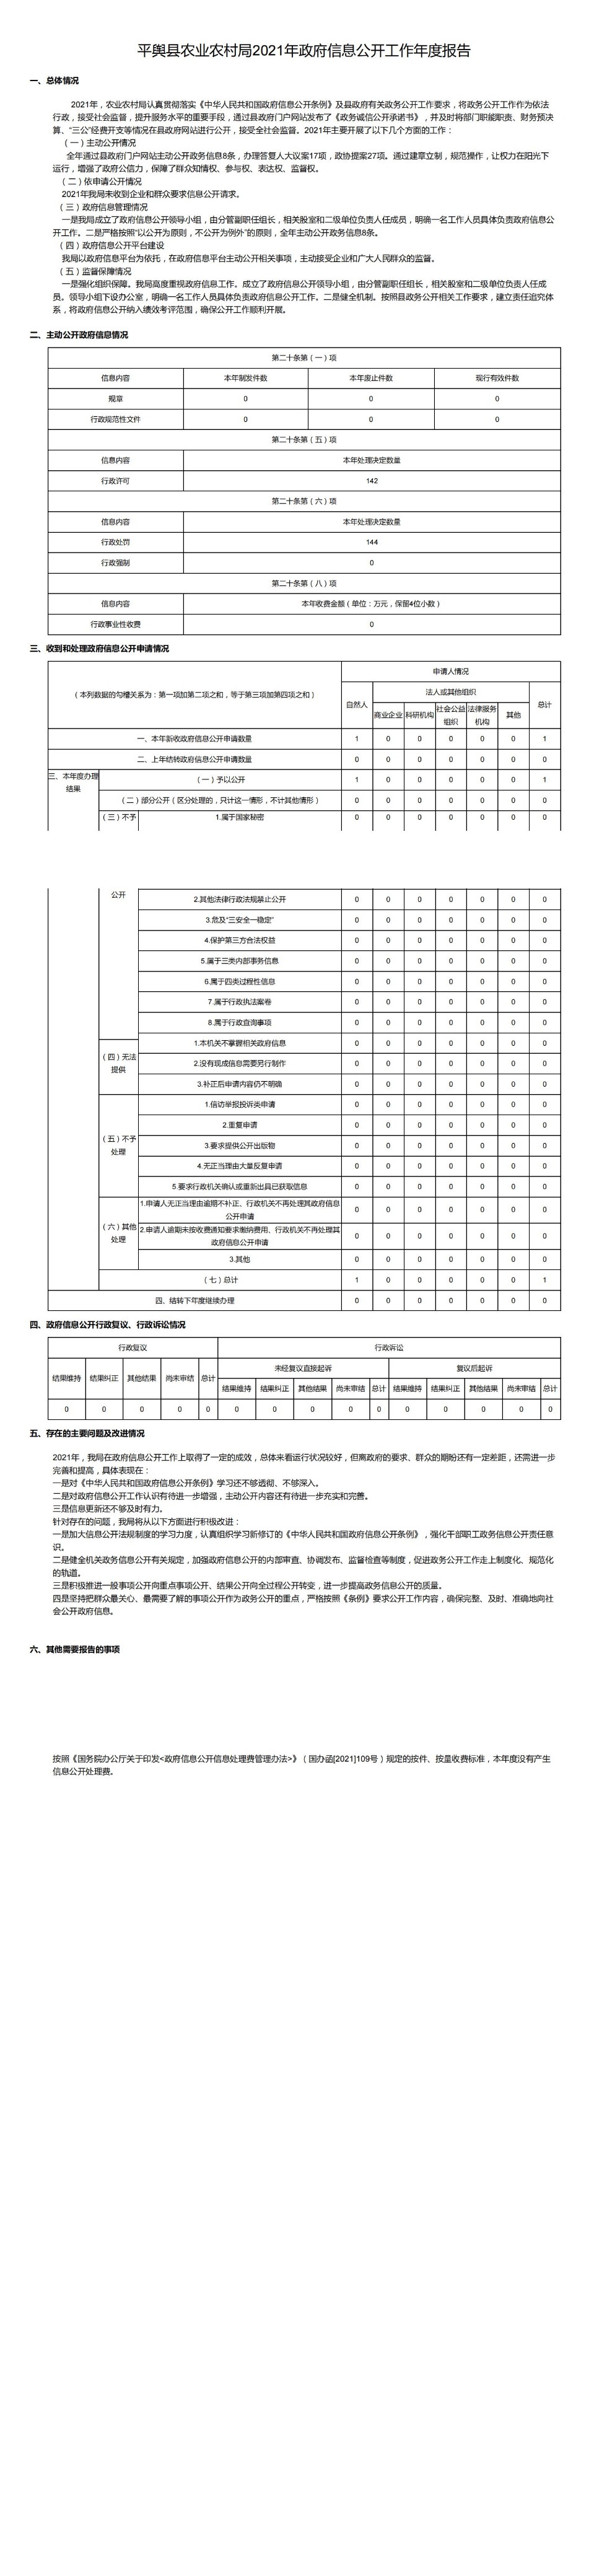 平舆县农业农村局2021年政府信息公开工作年度报告_00.jpg